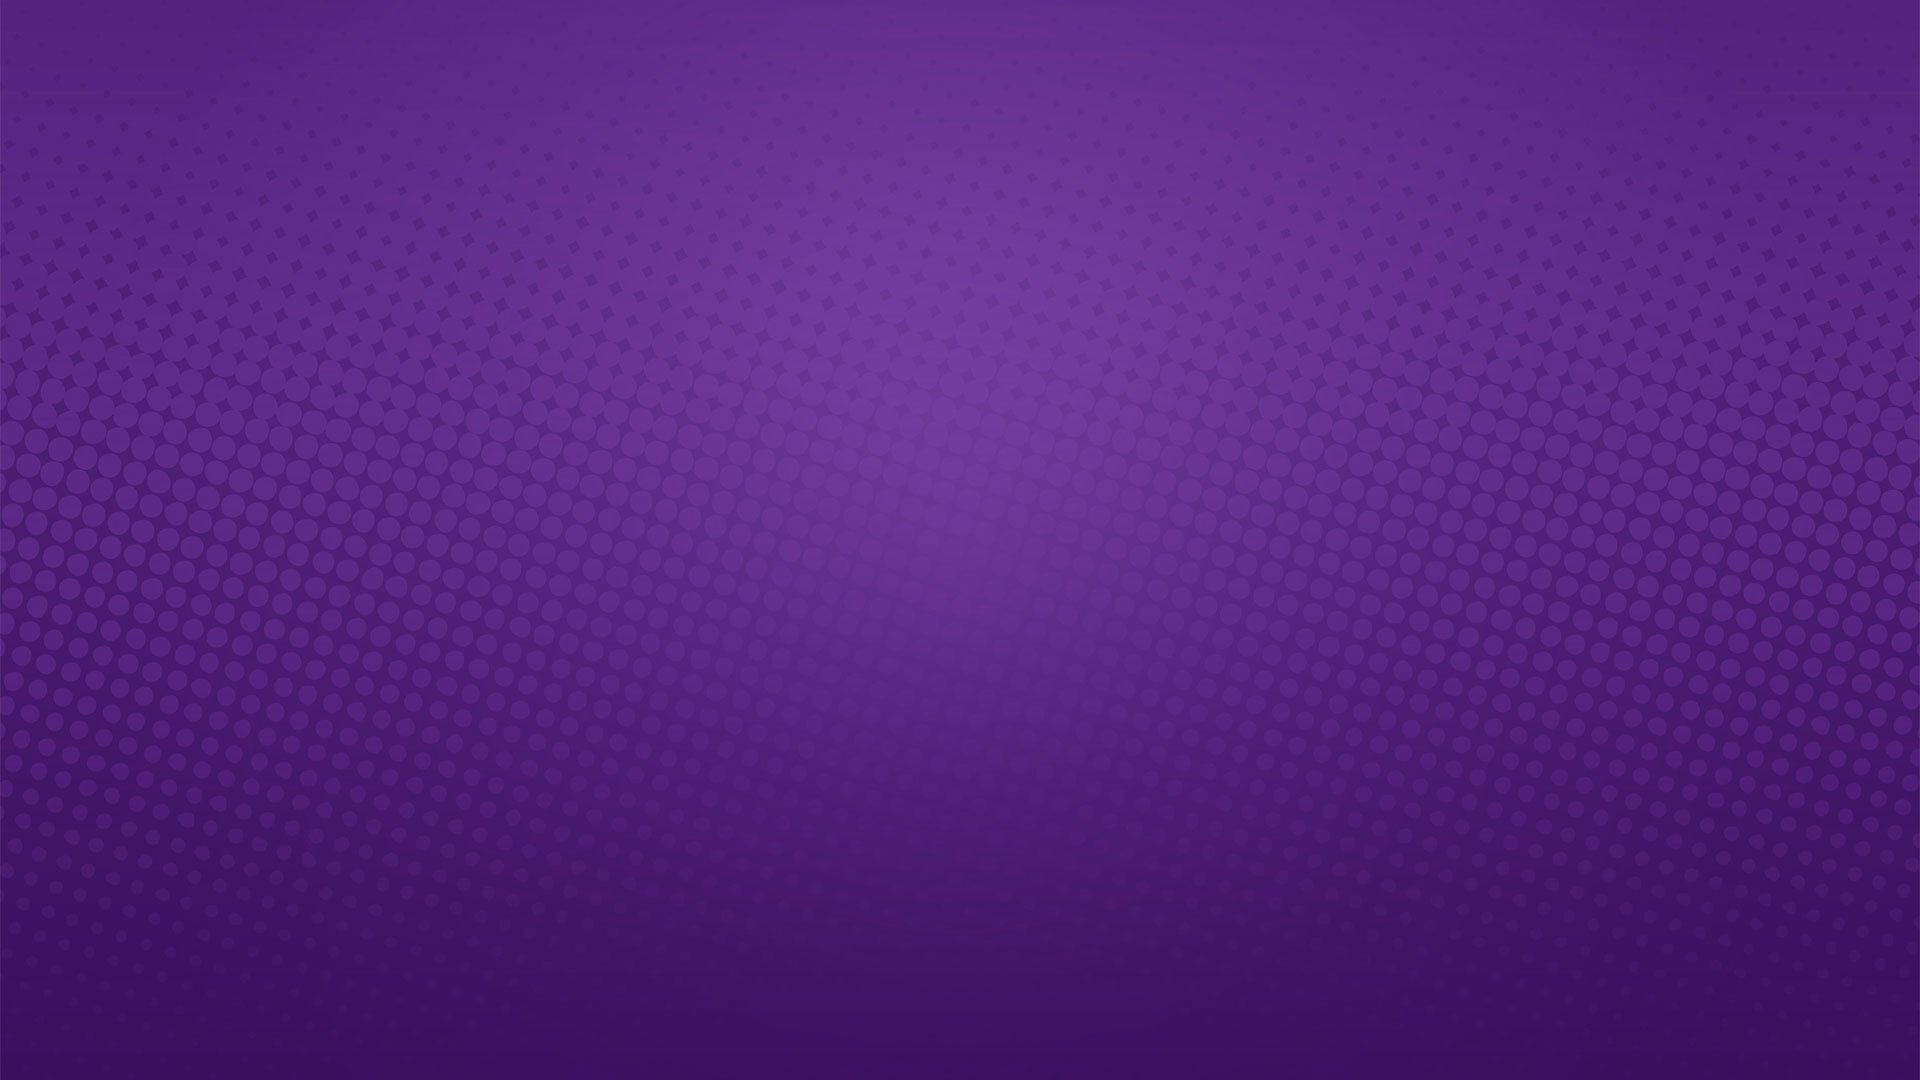 17 Pastel Purple Laptop Wallpapers  WallpaperSafari